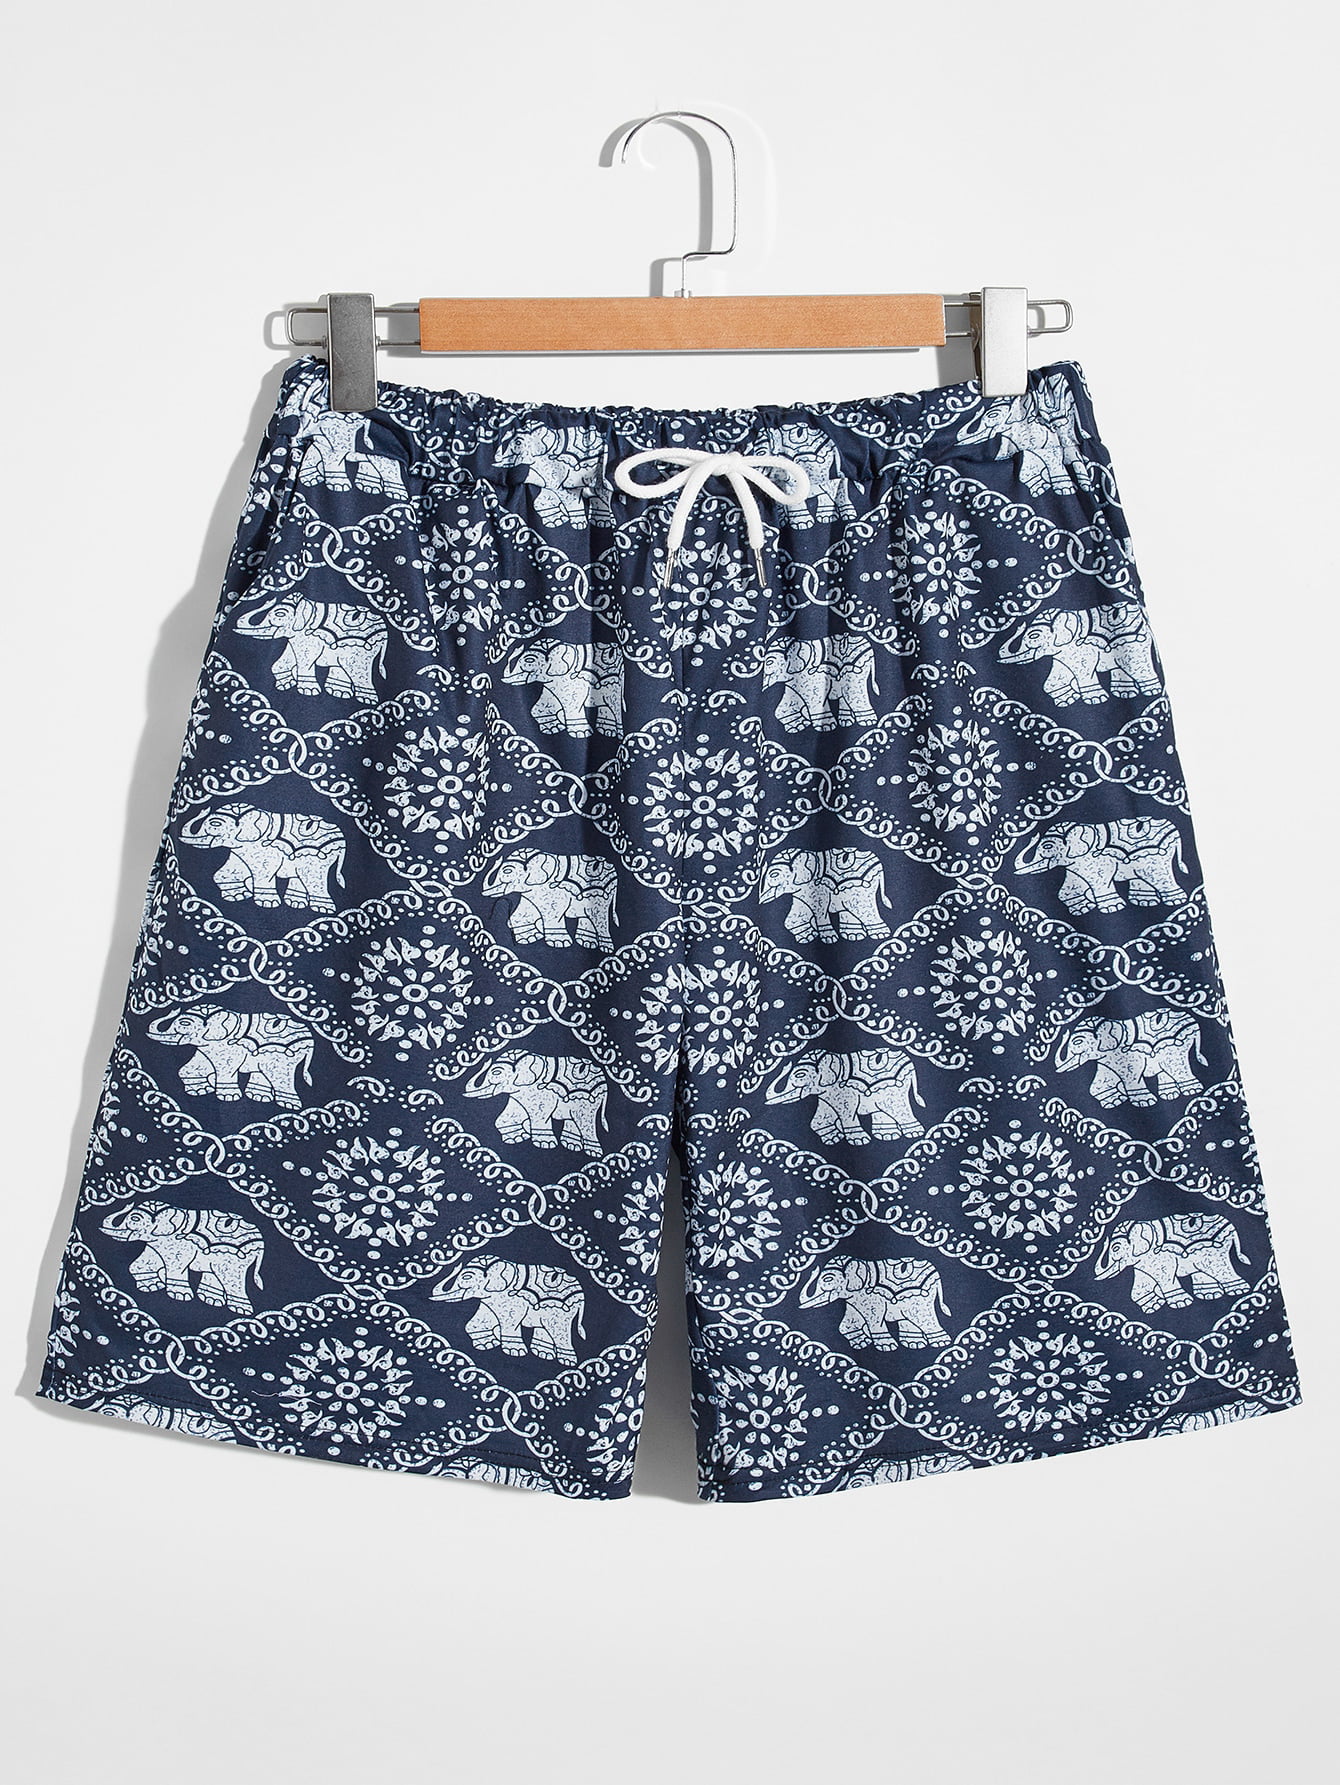 Mens Cargo Shorts Elephant Pattern Adjustable Shorts